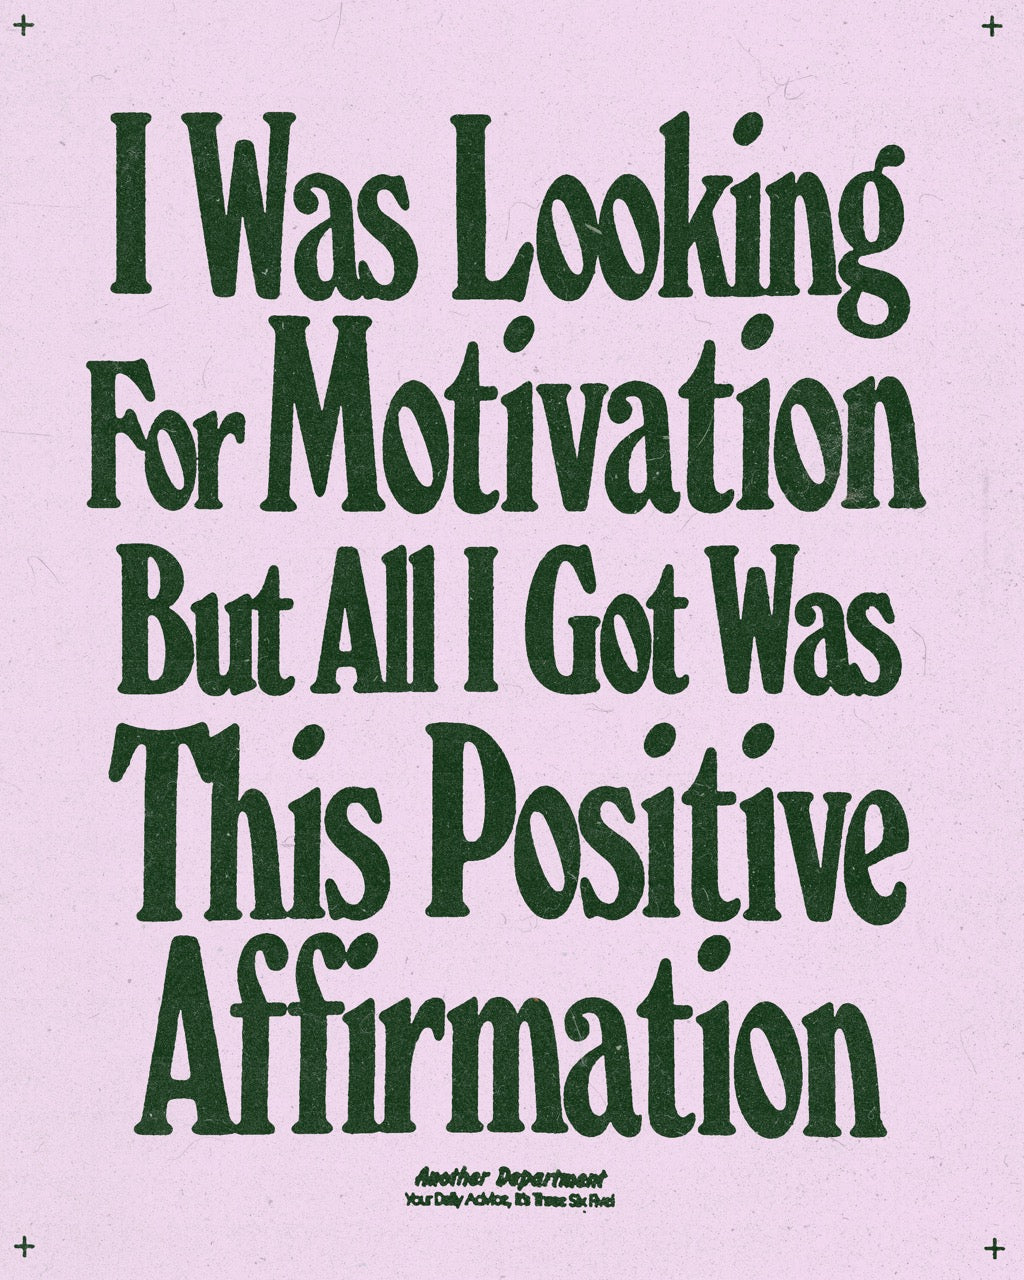 359 - Positive Affirmation